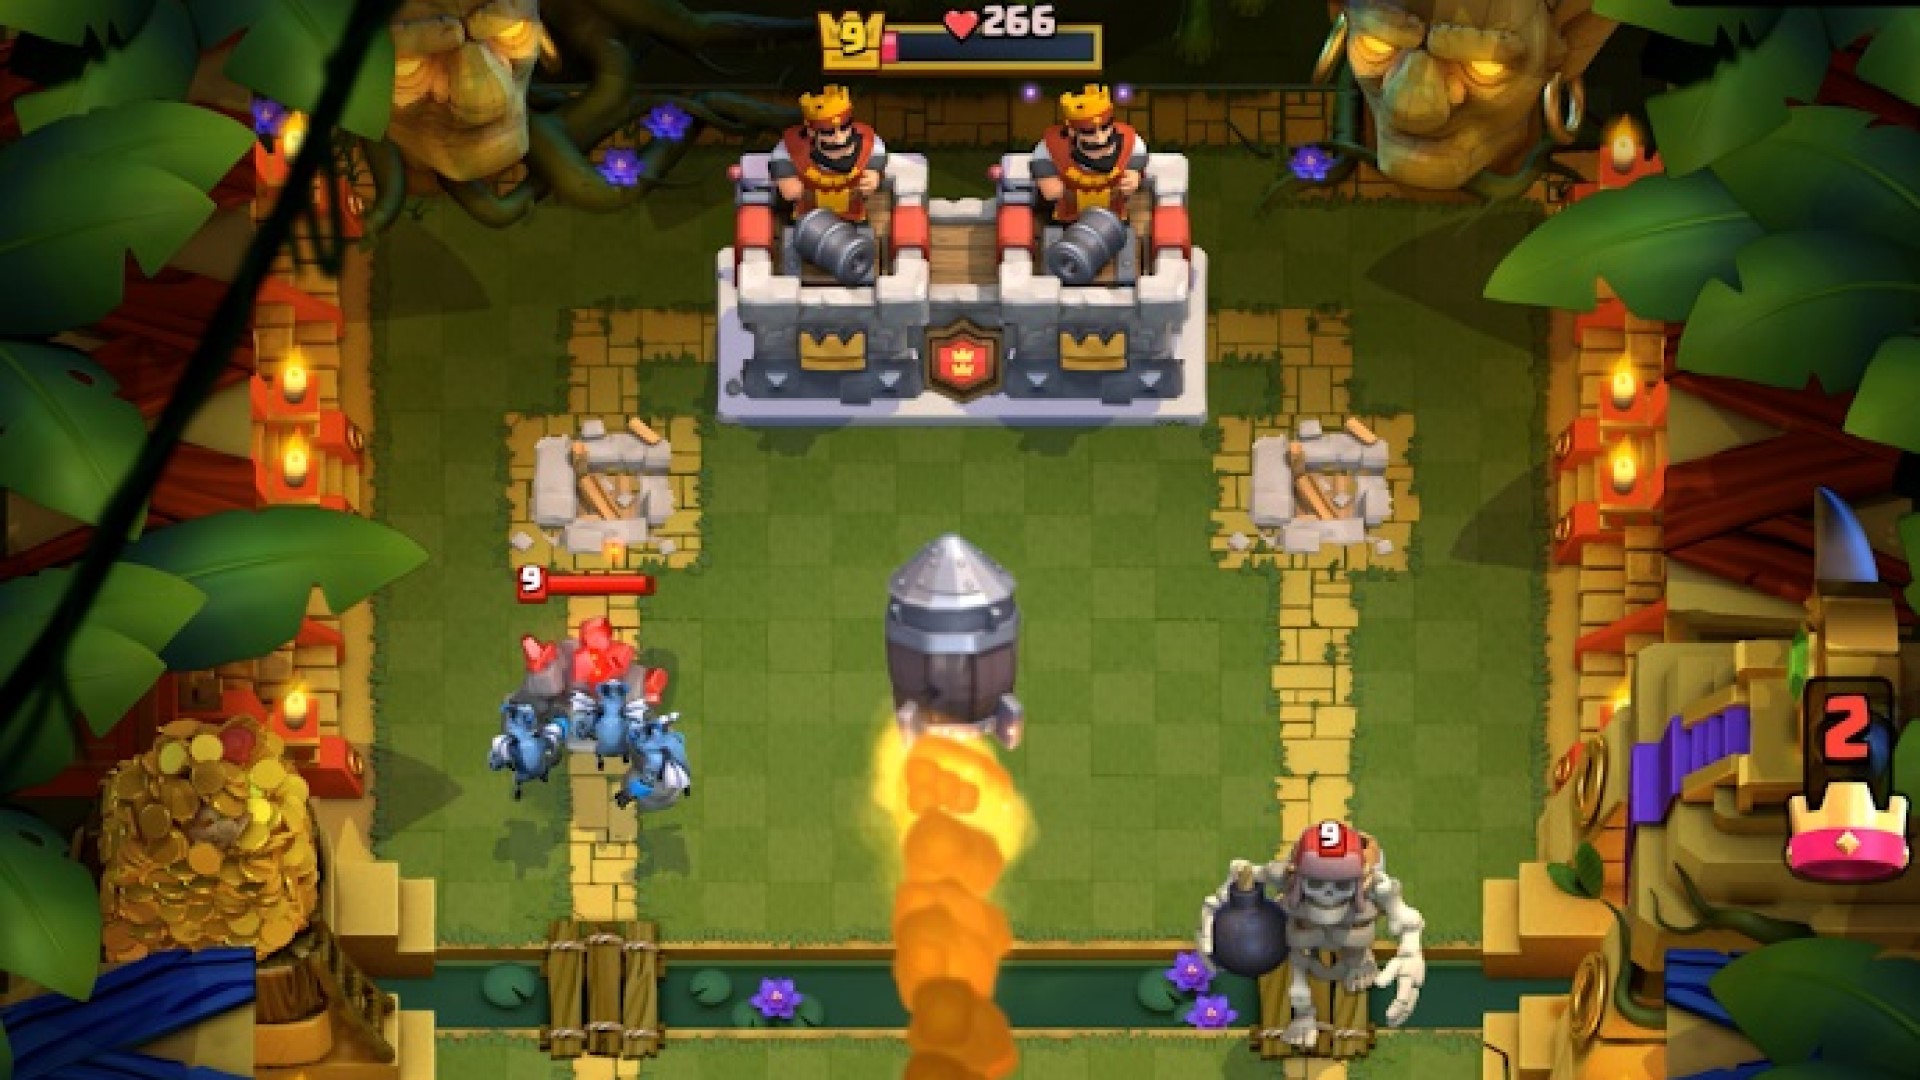 Trò chơi chiến lược di động tốt nhất: Clash Royale. Hình ảnh cho thấy hai vị vua nhắm pháo vào một bộ xương khổng lồ trong một khung cảnh giống như rừng rậm